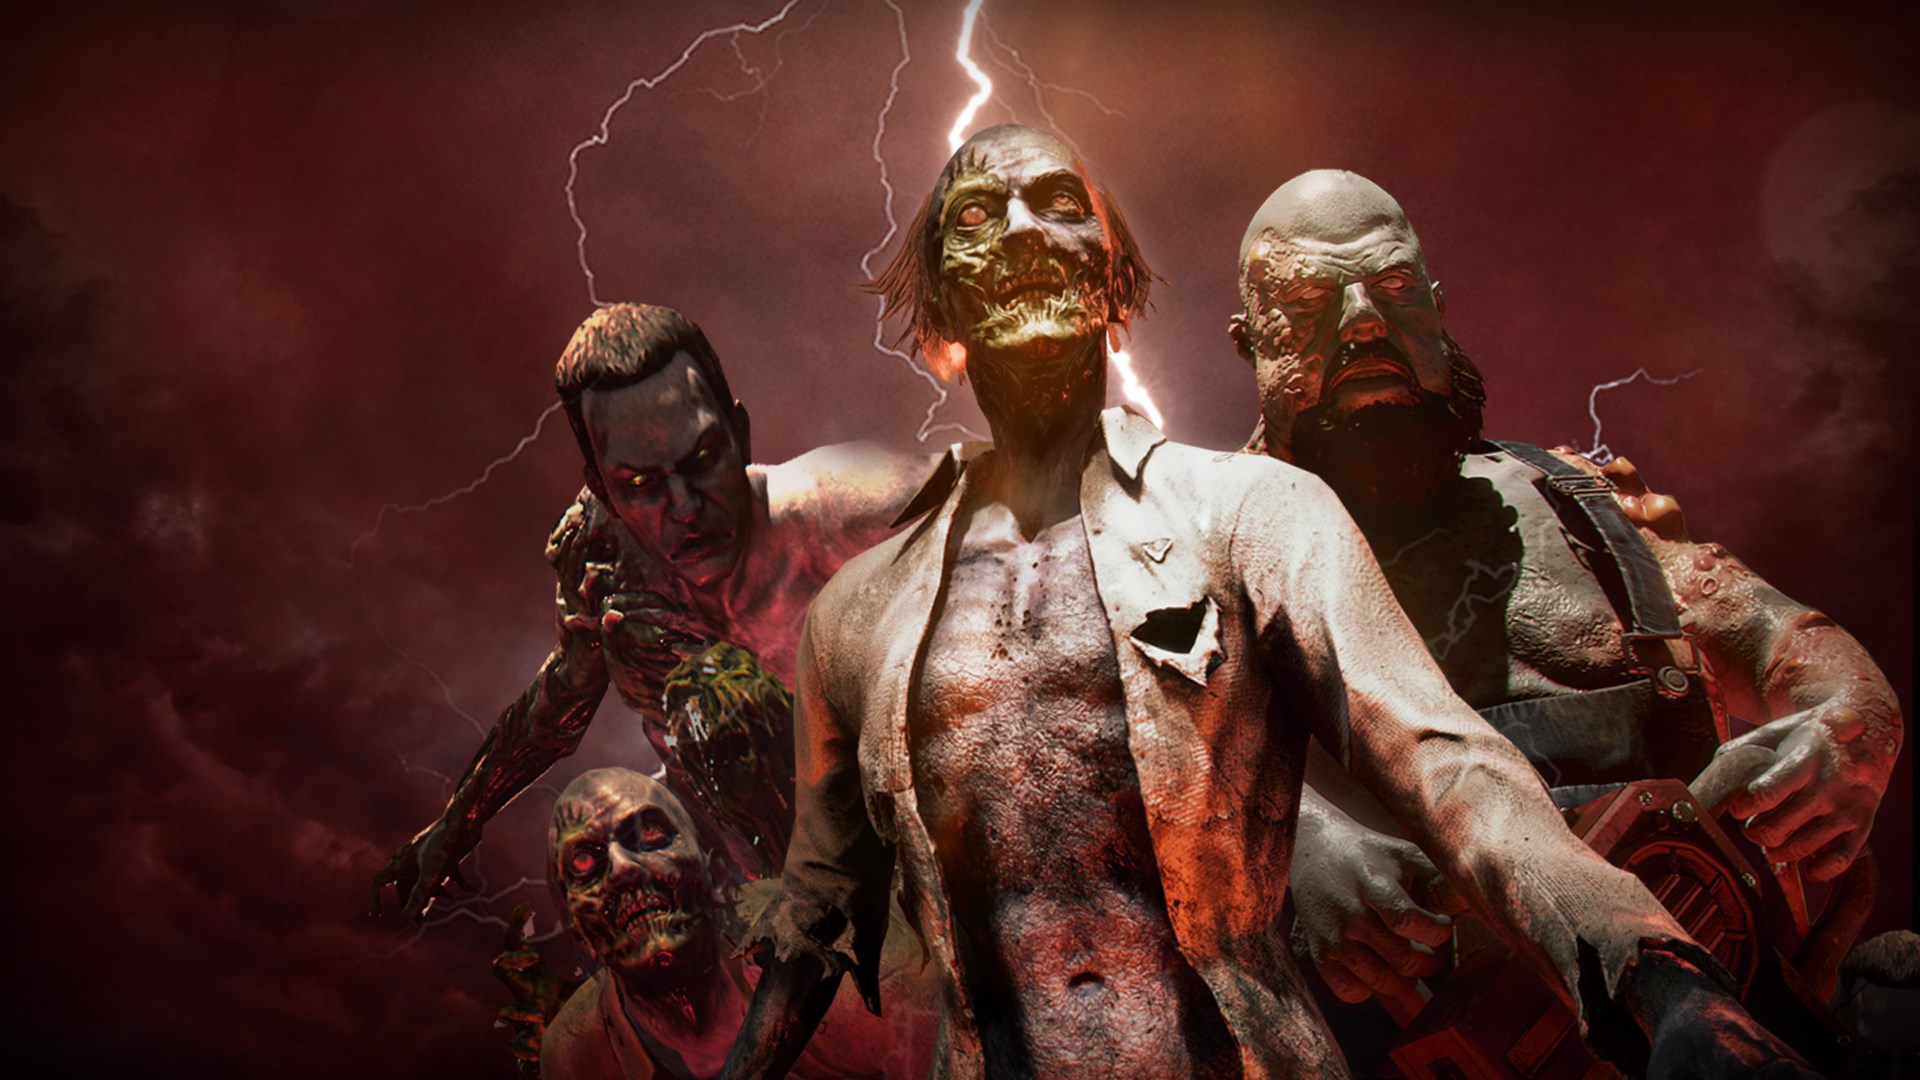 Buy Zombies Ate My Neighbors and Ghoul Patrol - Microsoft Store en-IS